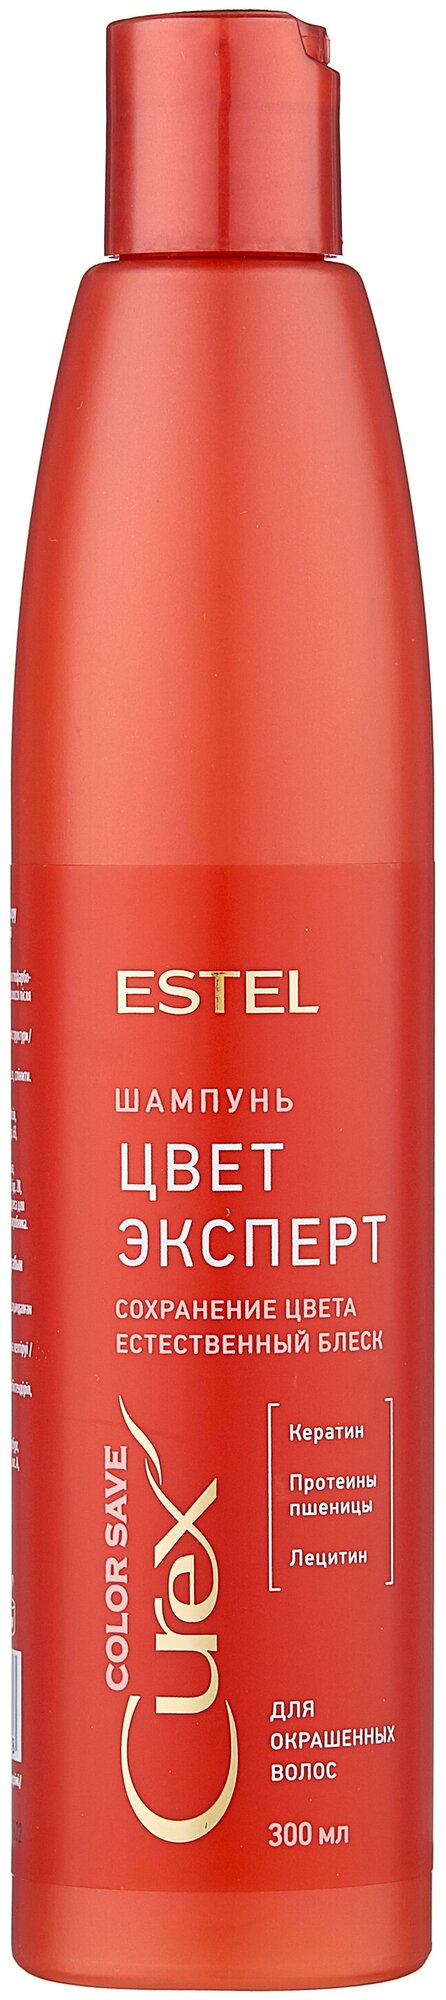 Estel Шампунь "Поддержания цвета" для окрашенных волос, 300 мл (Estel, ) - фото №1